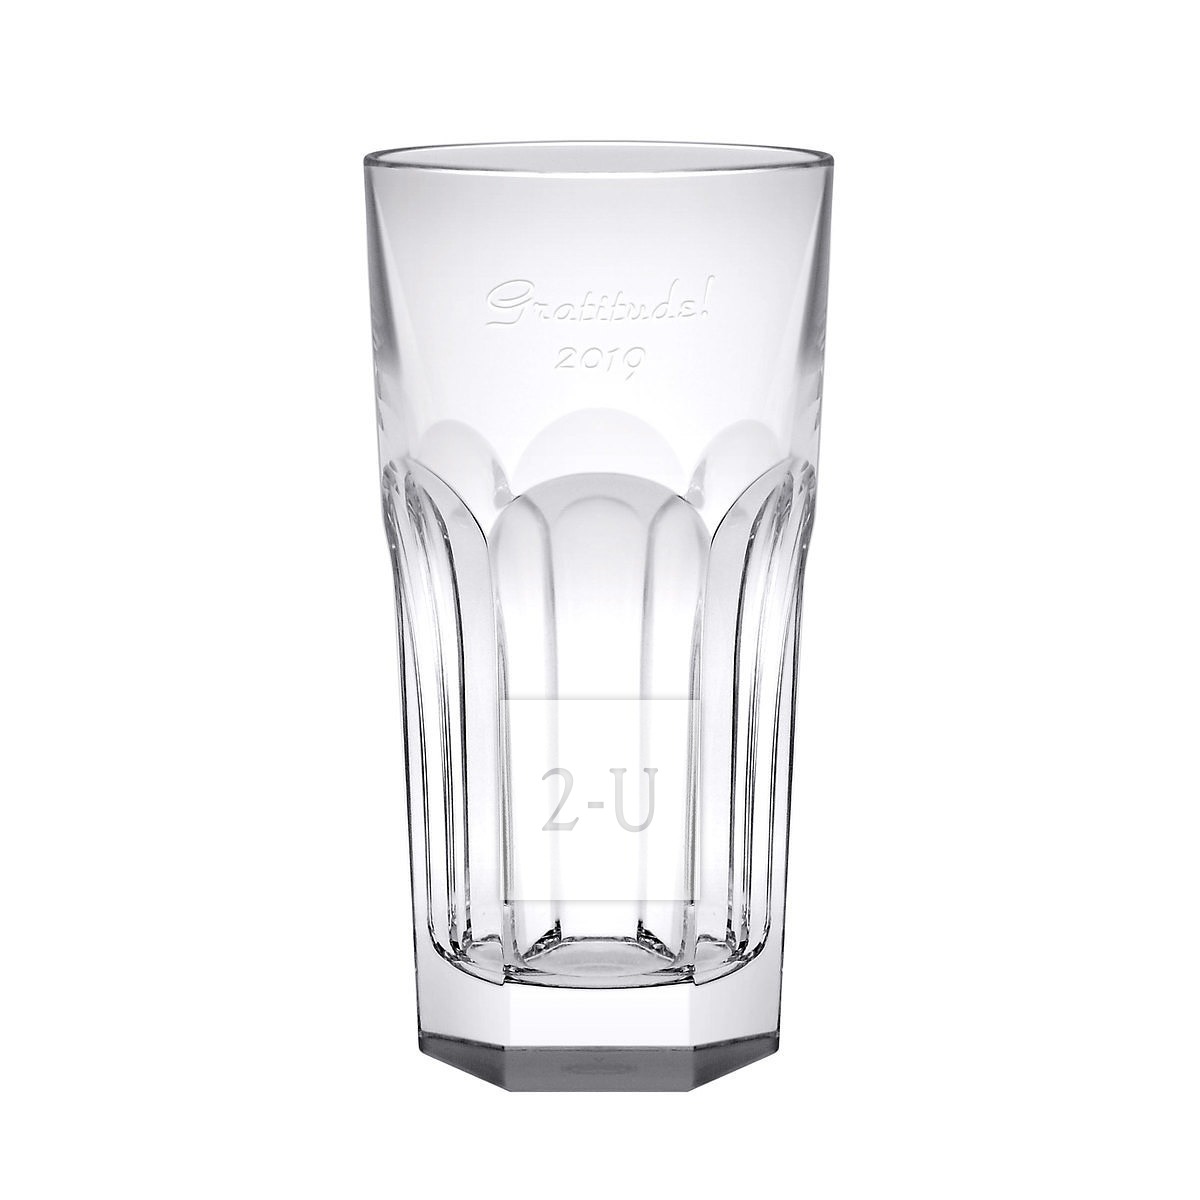 法国巴卡拉 Baccarat Harcourt 系列水晶玻璃海波杯